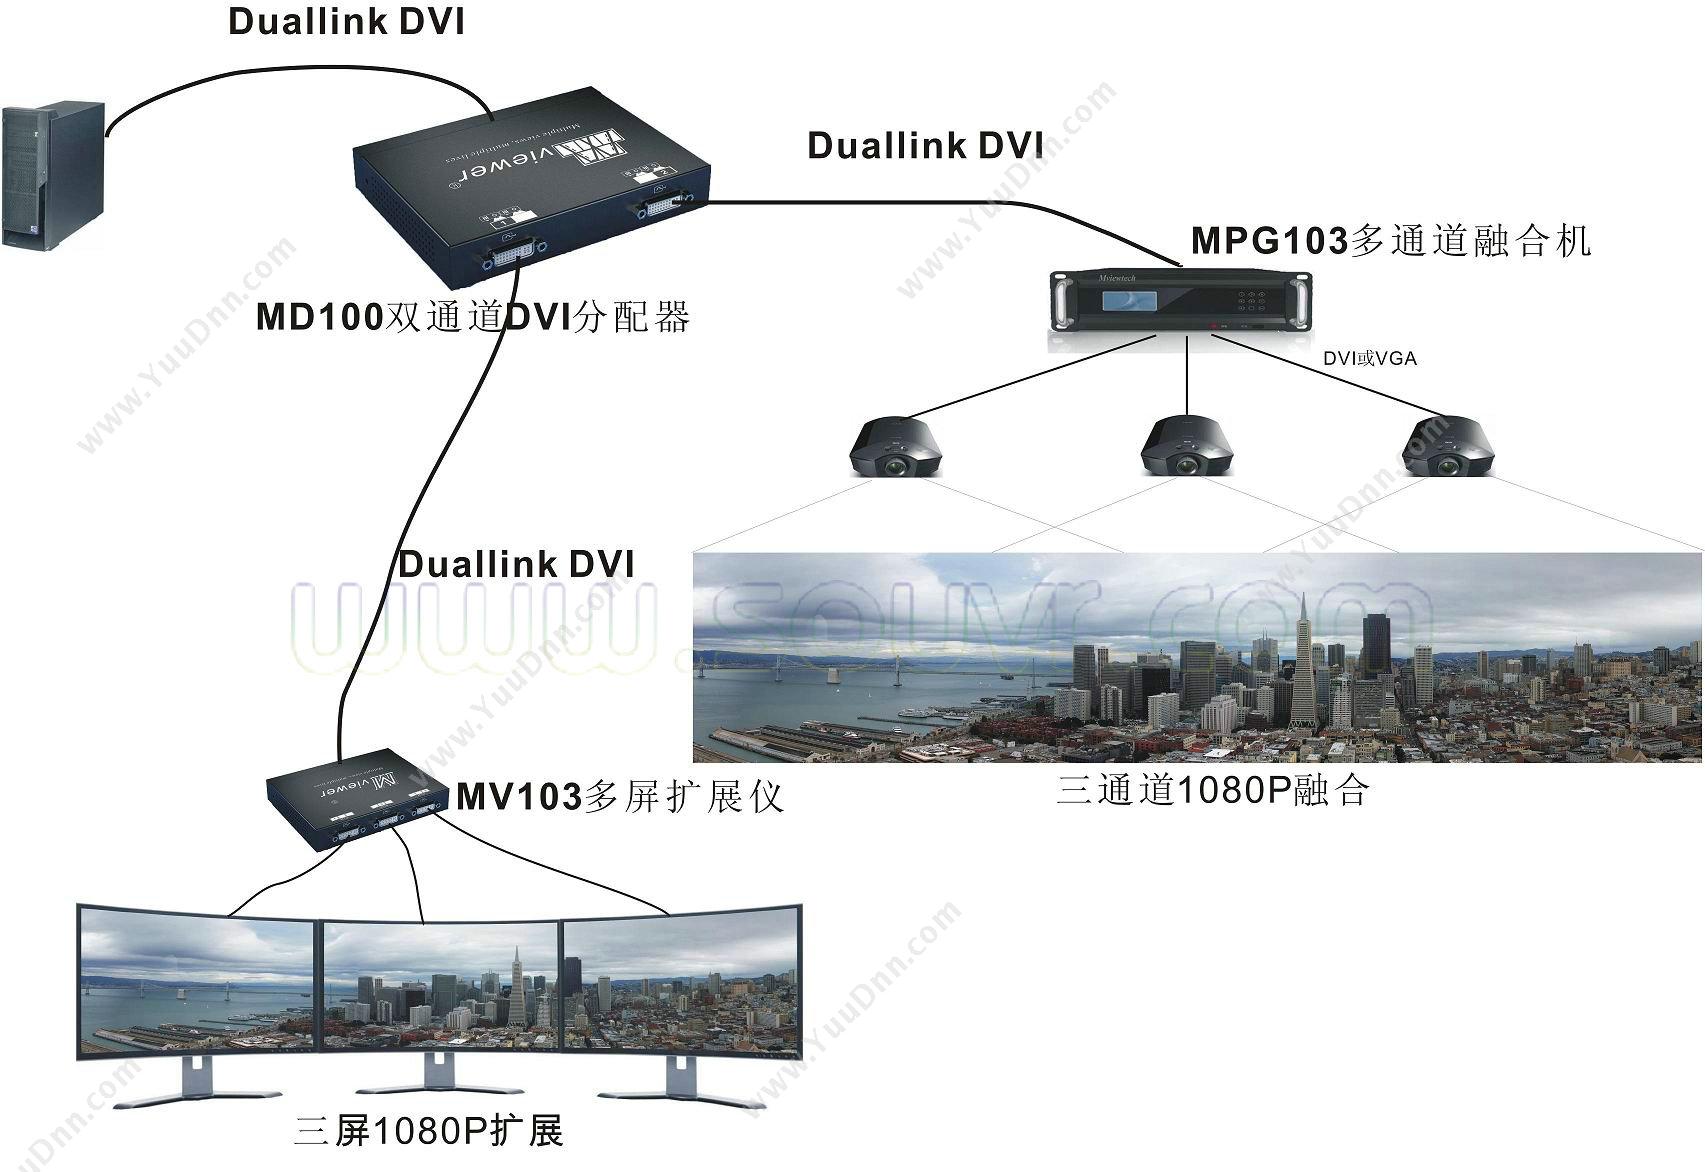 大视 MD100 双通道DVI复制模块 融合系统